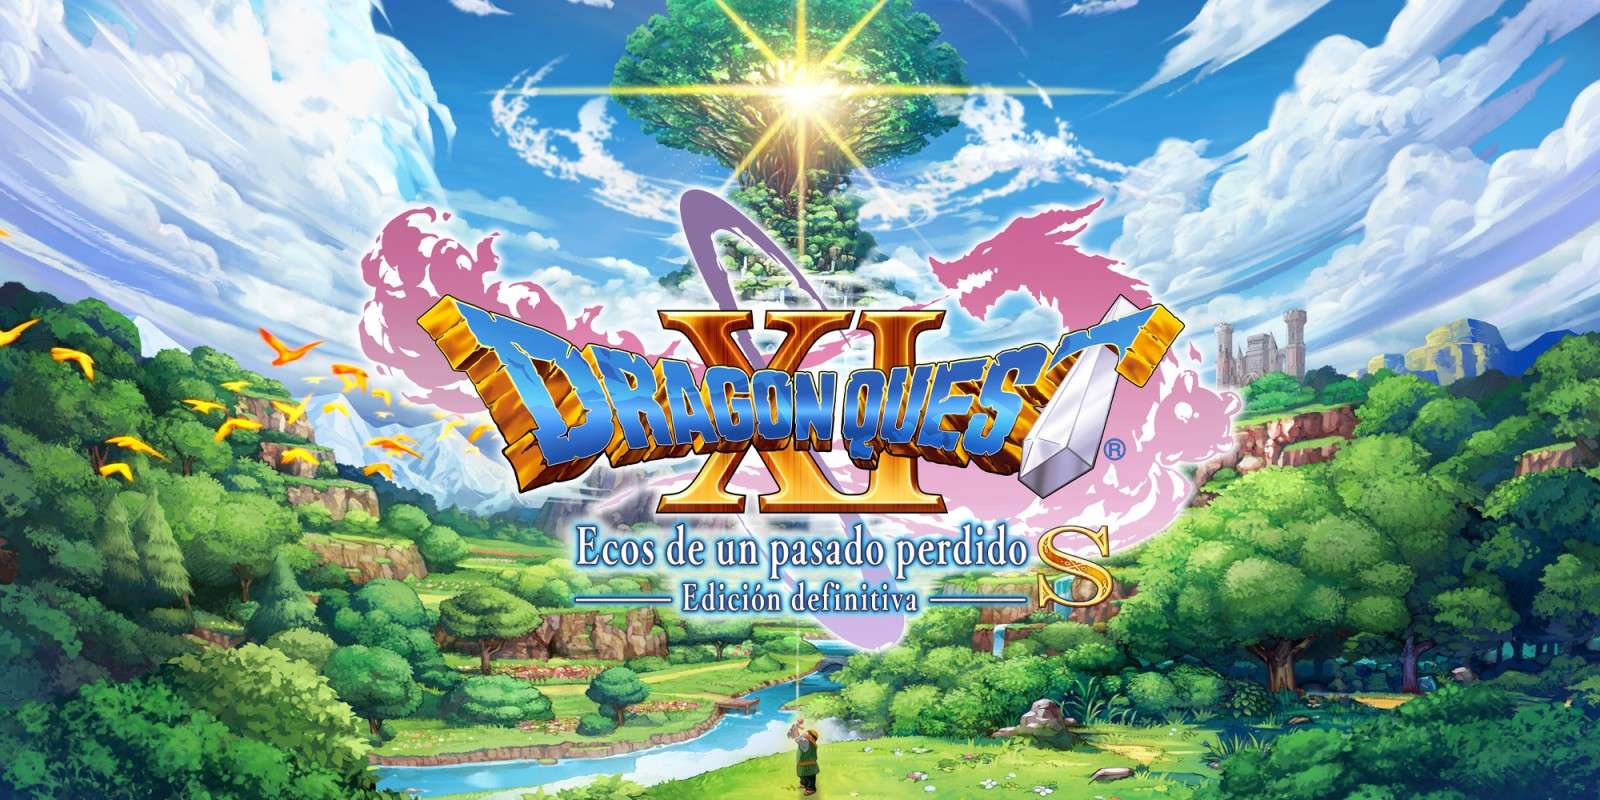 La versión original de Dragon Quest XI es retirada en PlayStation 4